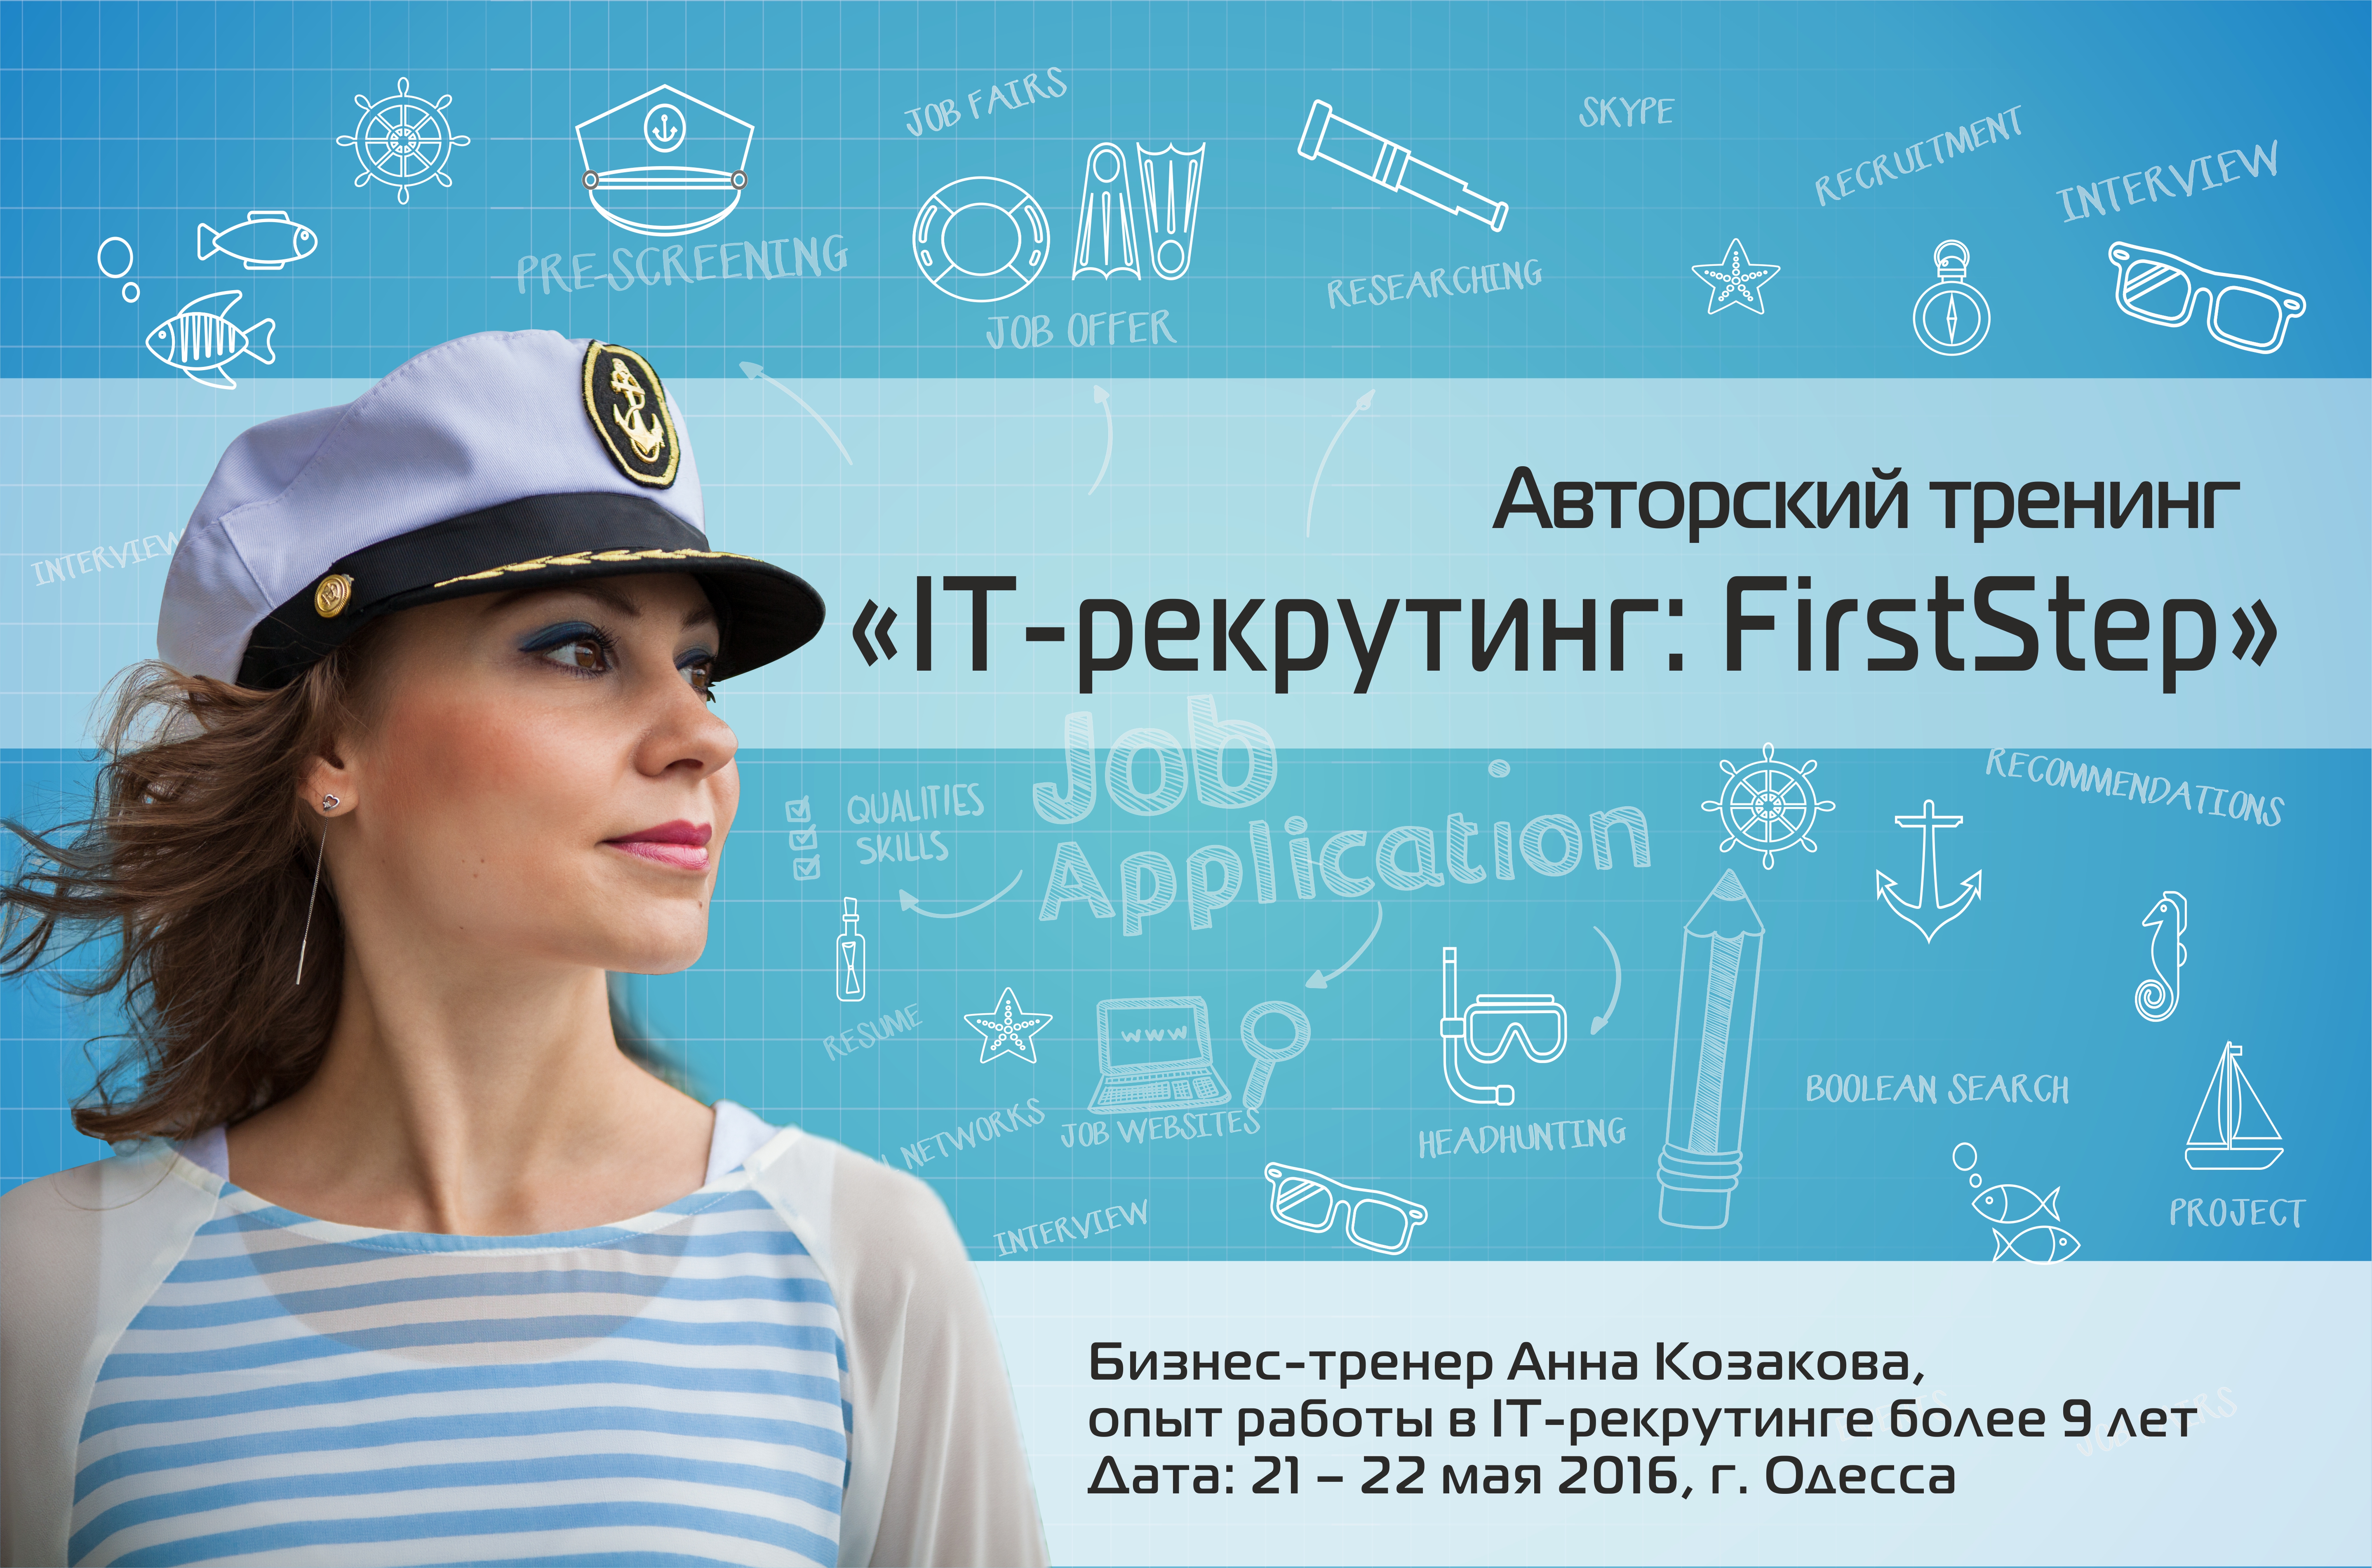 Авторский тренинг «IT-рекрутинг: First Step» Анны Козаковой 21-22 мая 2016 года, Одесса.